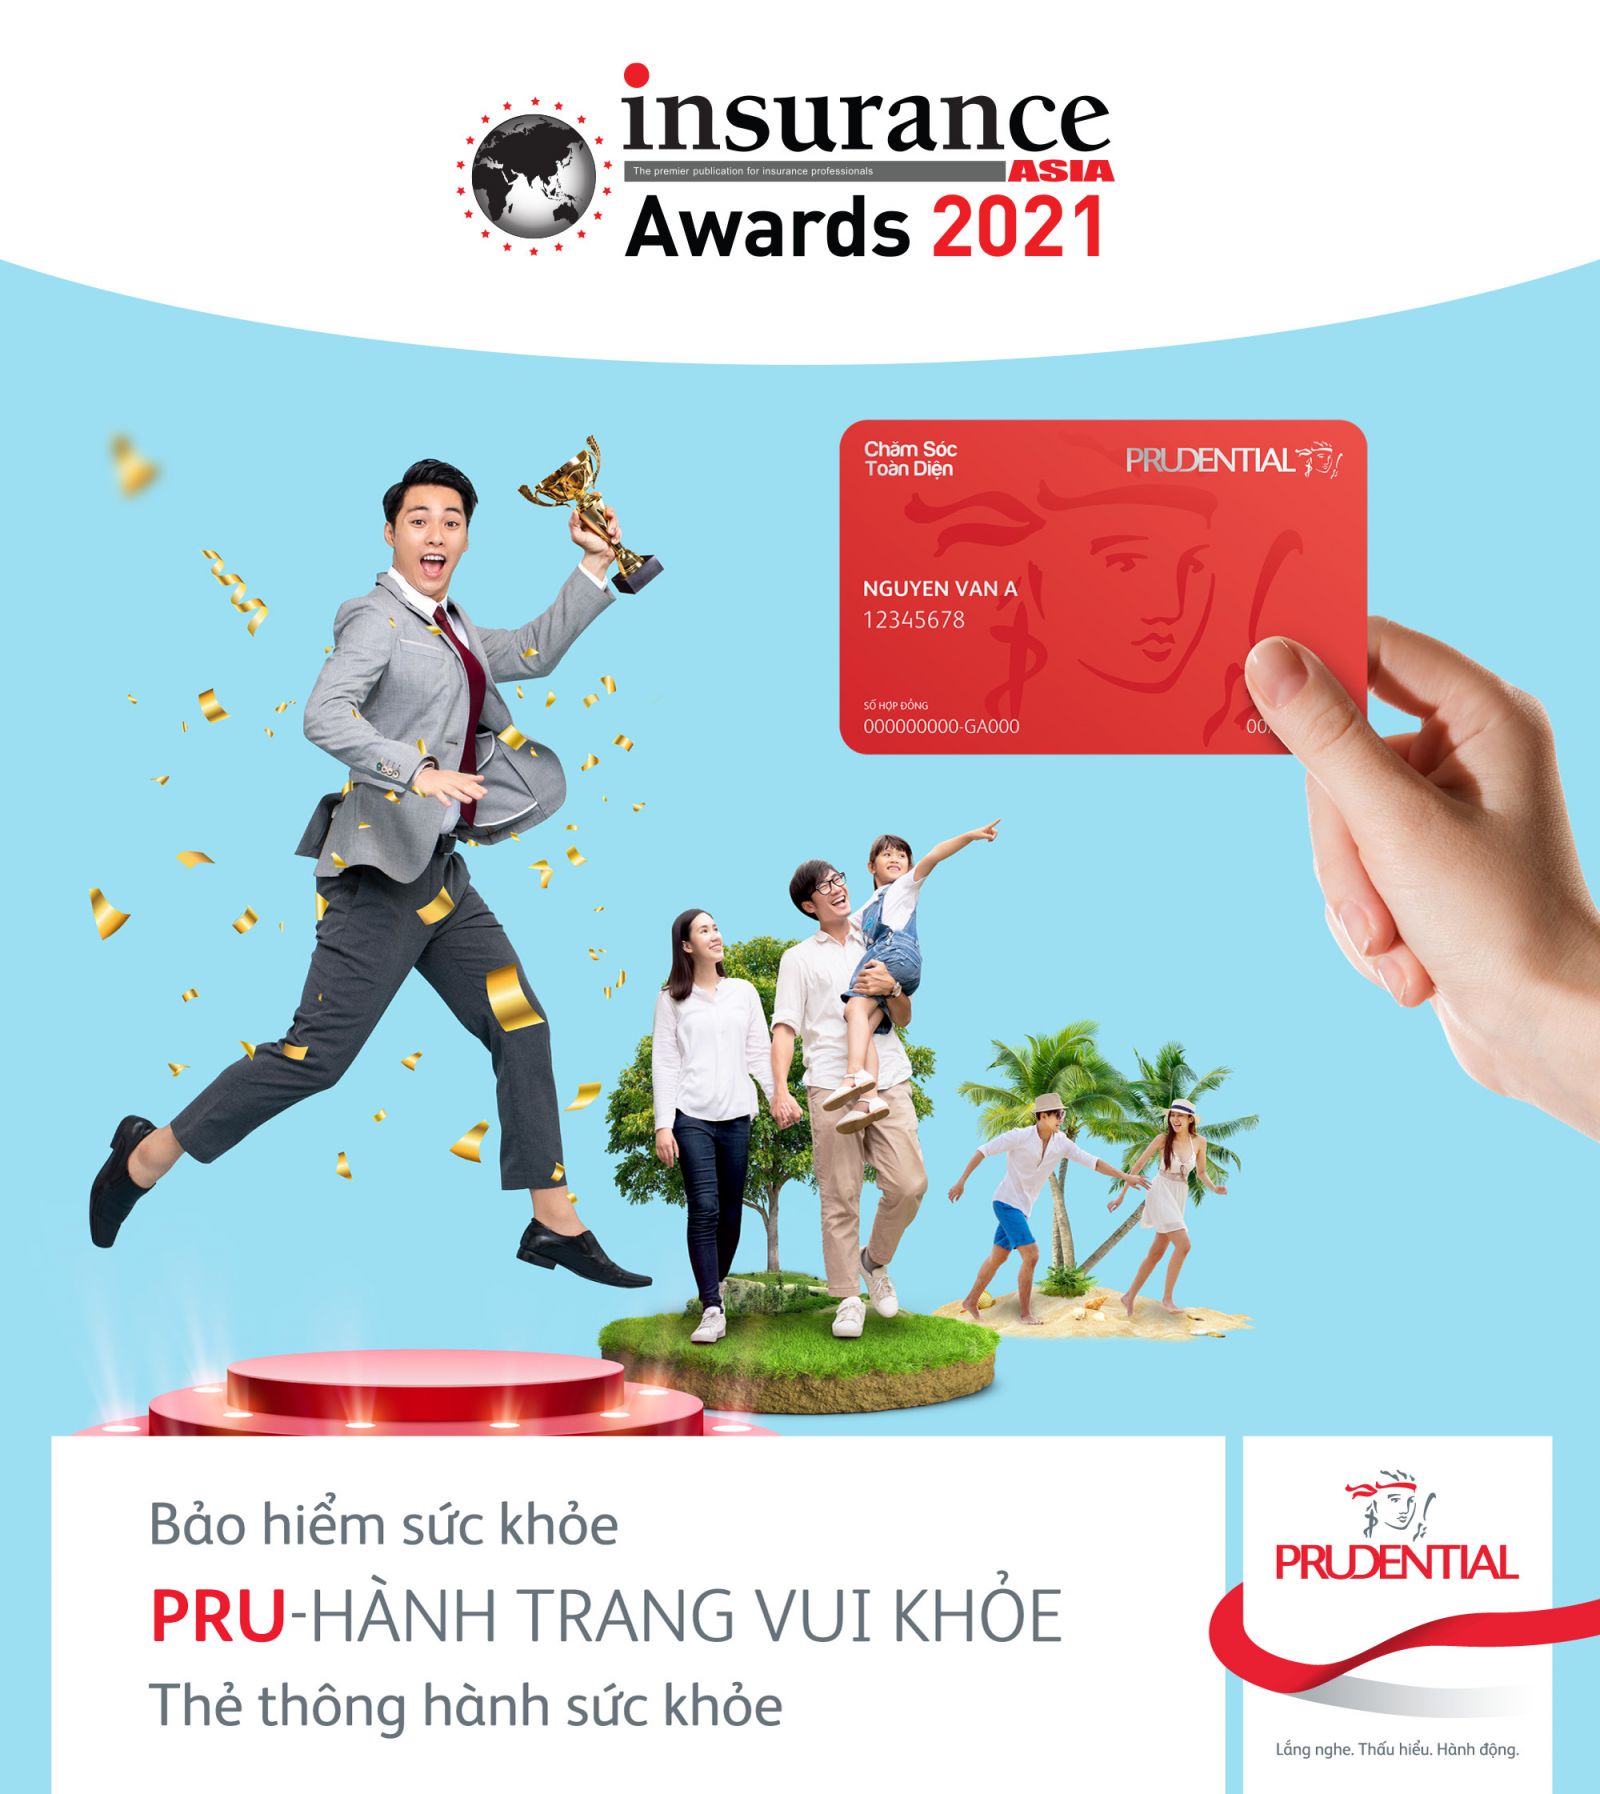 Prudential cũng nhận giải “Sản phẩm bảo hiểm mới của năm” cho giải pháp bảo vệ sức khỏe PRU- Hành Trang Vui Khỏe